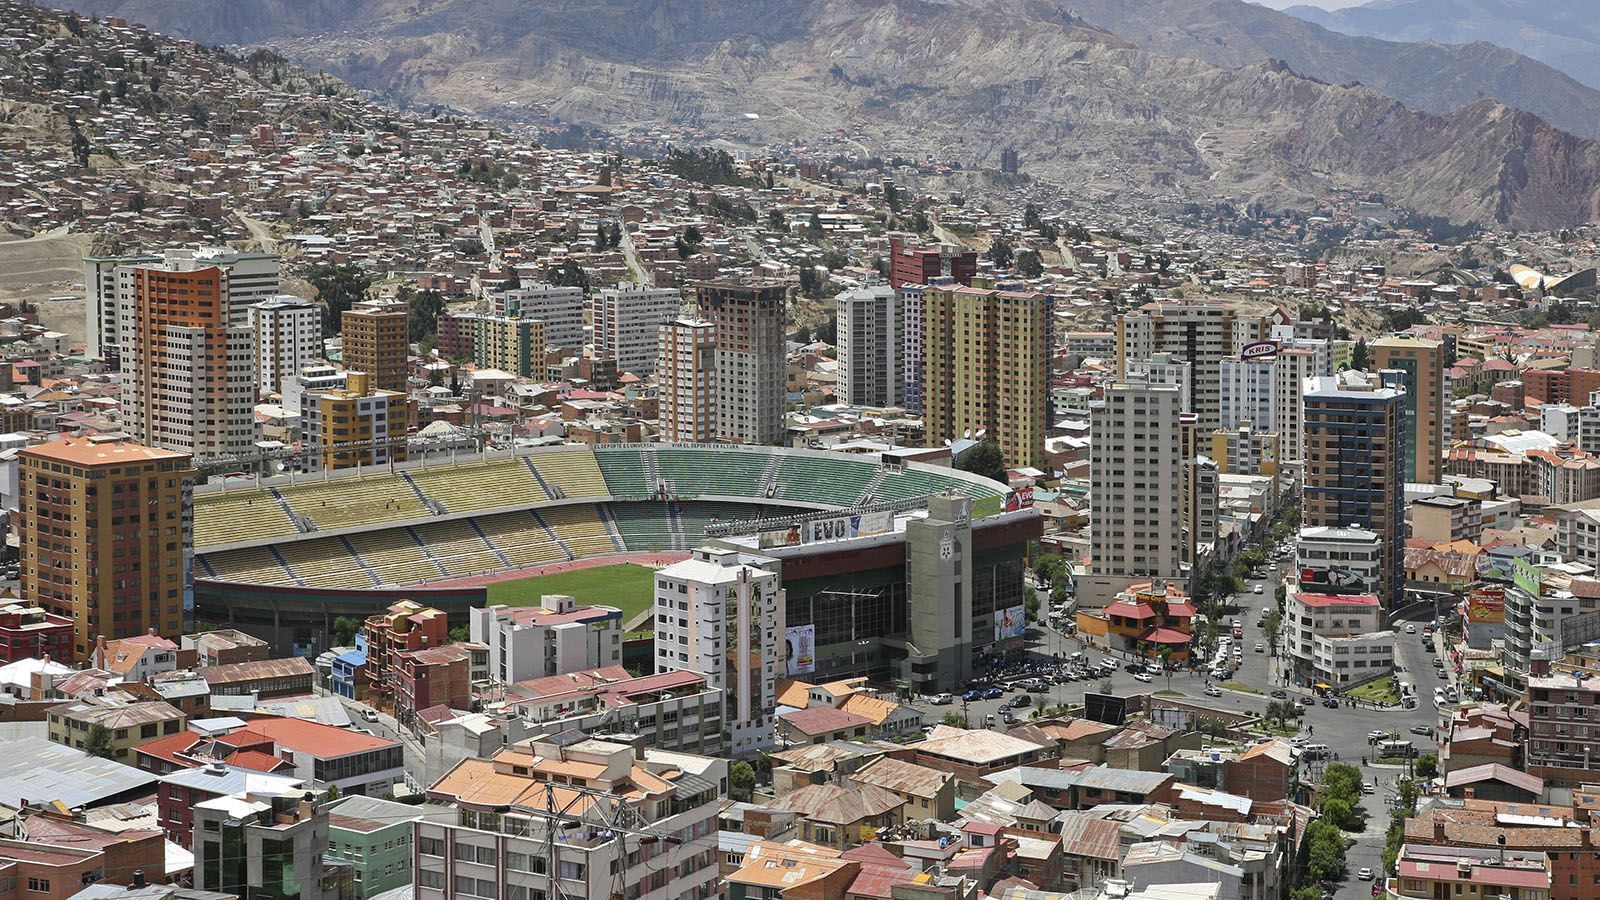 
                <strong>Estadio Hernando Siles (Bolivien)</strong><br>
                Das Estadio Hernando Siles ist der größte Sportkomplex Boliviens und hat Platz für 42.000 Zuschauer. Es liegt in der Hauptstadt La Paz auf einer Höhe von 3.637 Metern. Weil sich viele ausländische Mannschaften über die Benachteiligung durch die Höhenlage beschwerten, griff die FIFA zwischenzeitlich ein und setzte eine Höhengrenze von 2.500 Metern für WM-Qualifikationsspiele an. Bolivien protestierte erfolgreich. Seitdem darf Bolivien mit einer Sondergenehmigung im Hernando Siles spielen.
              